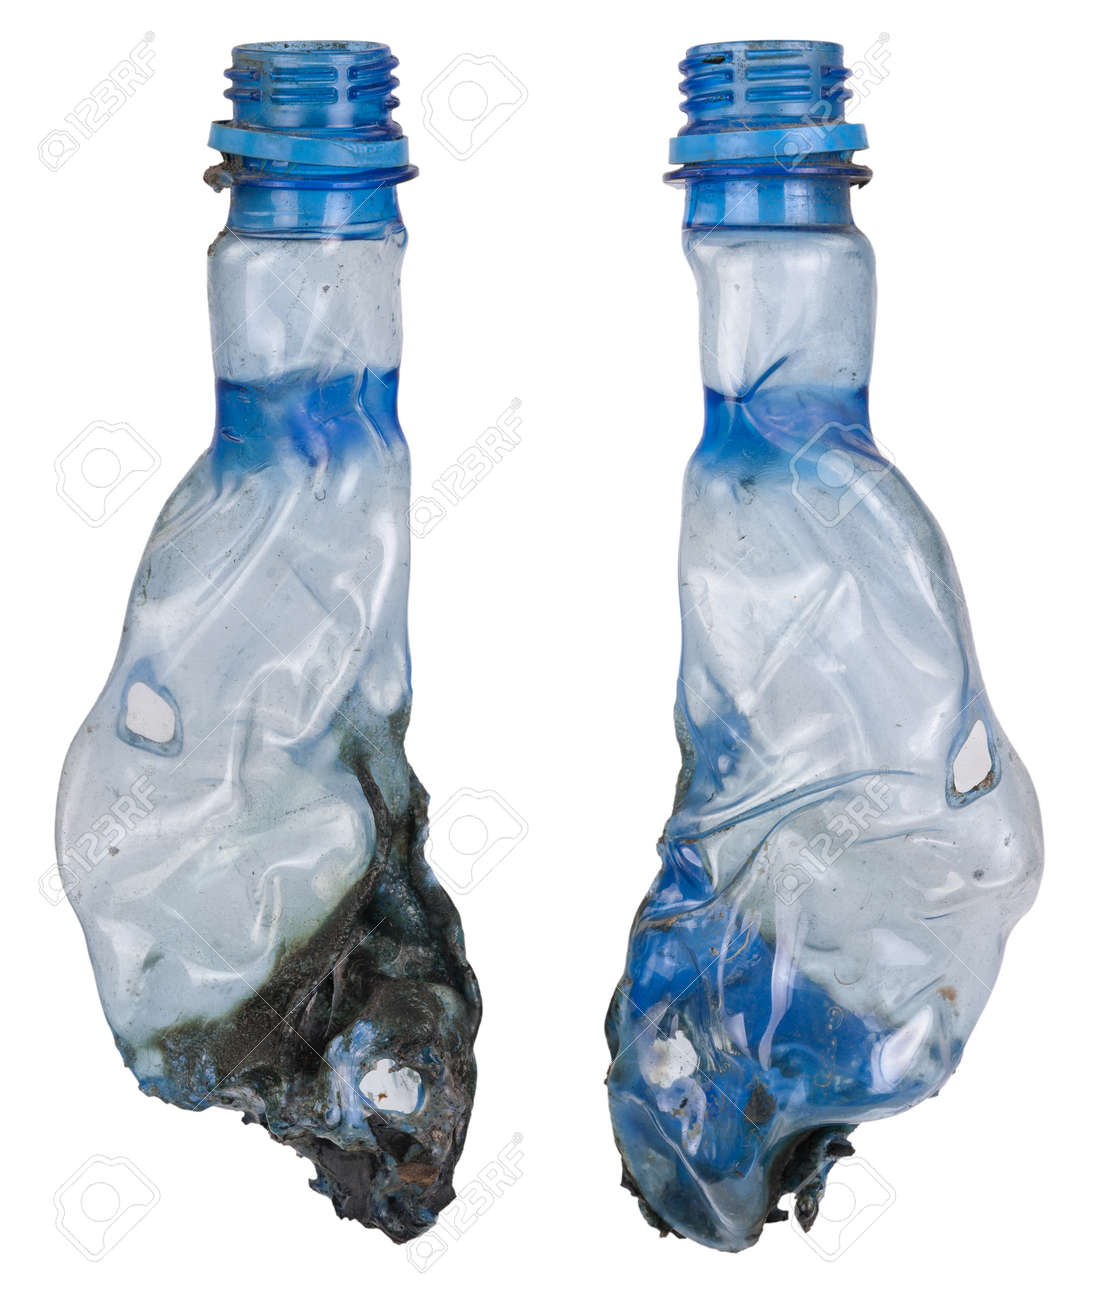 30925271-Burning-plastic-bottle-Stock-Photo.jpg